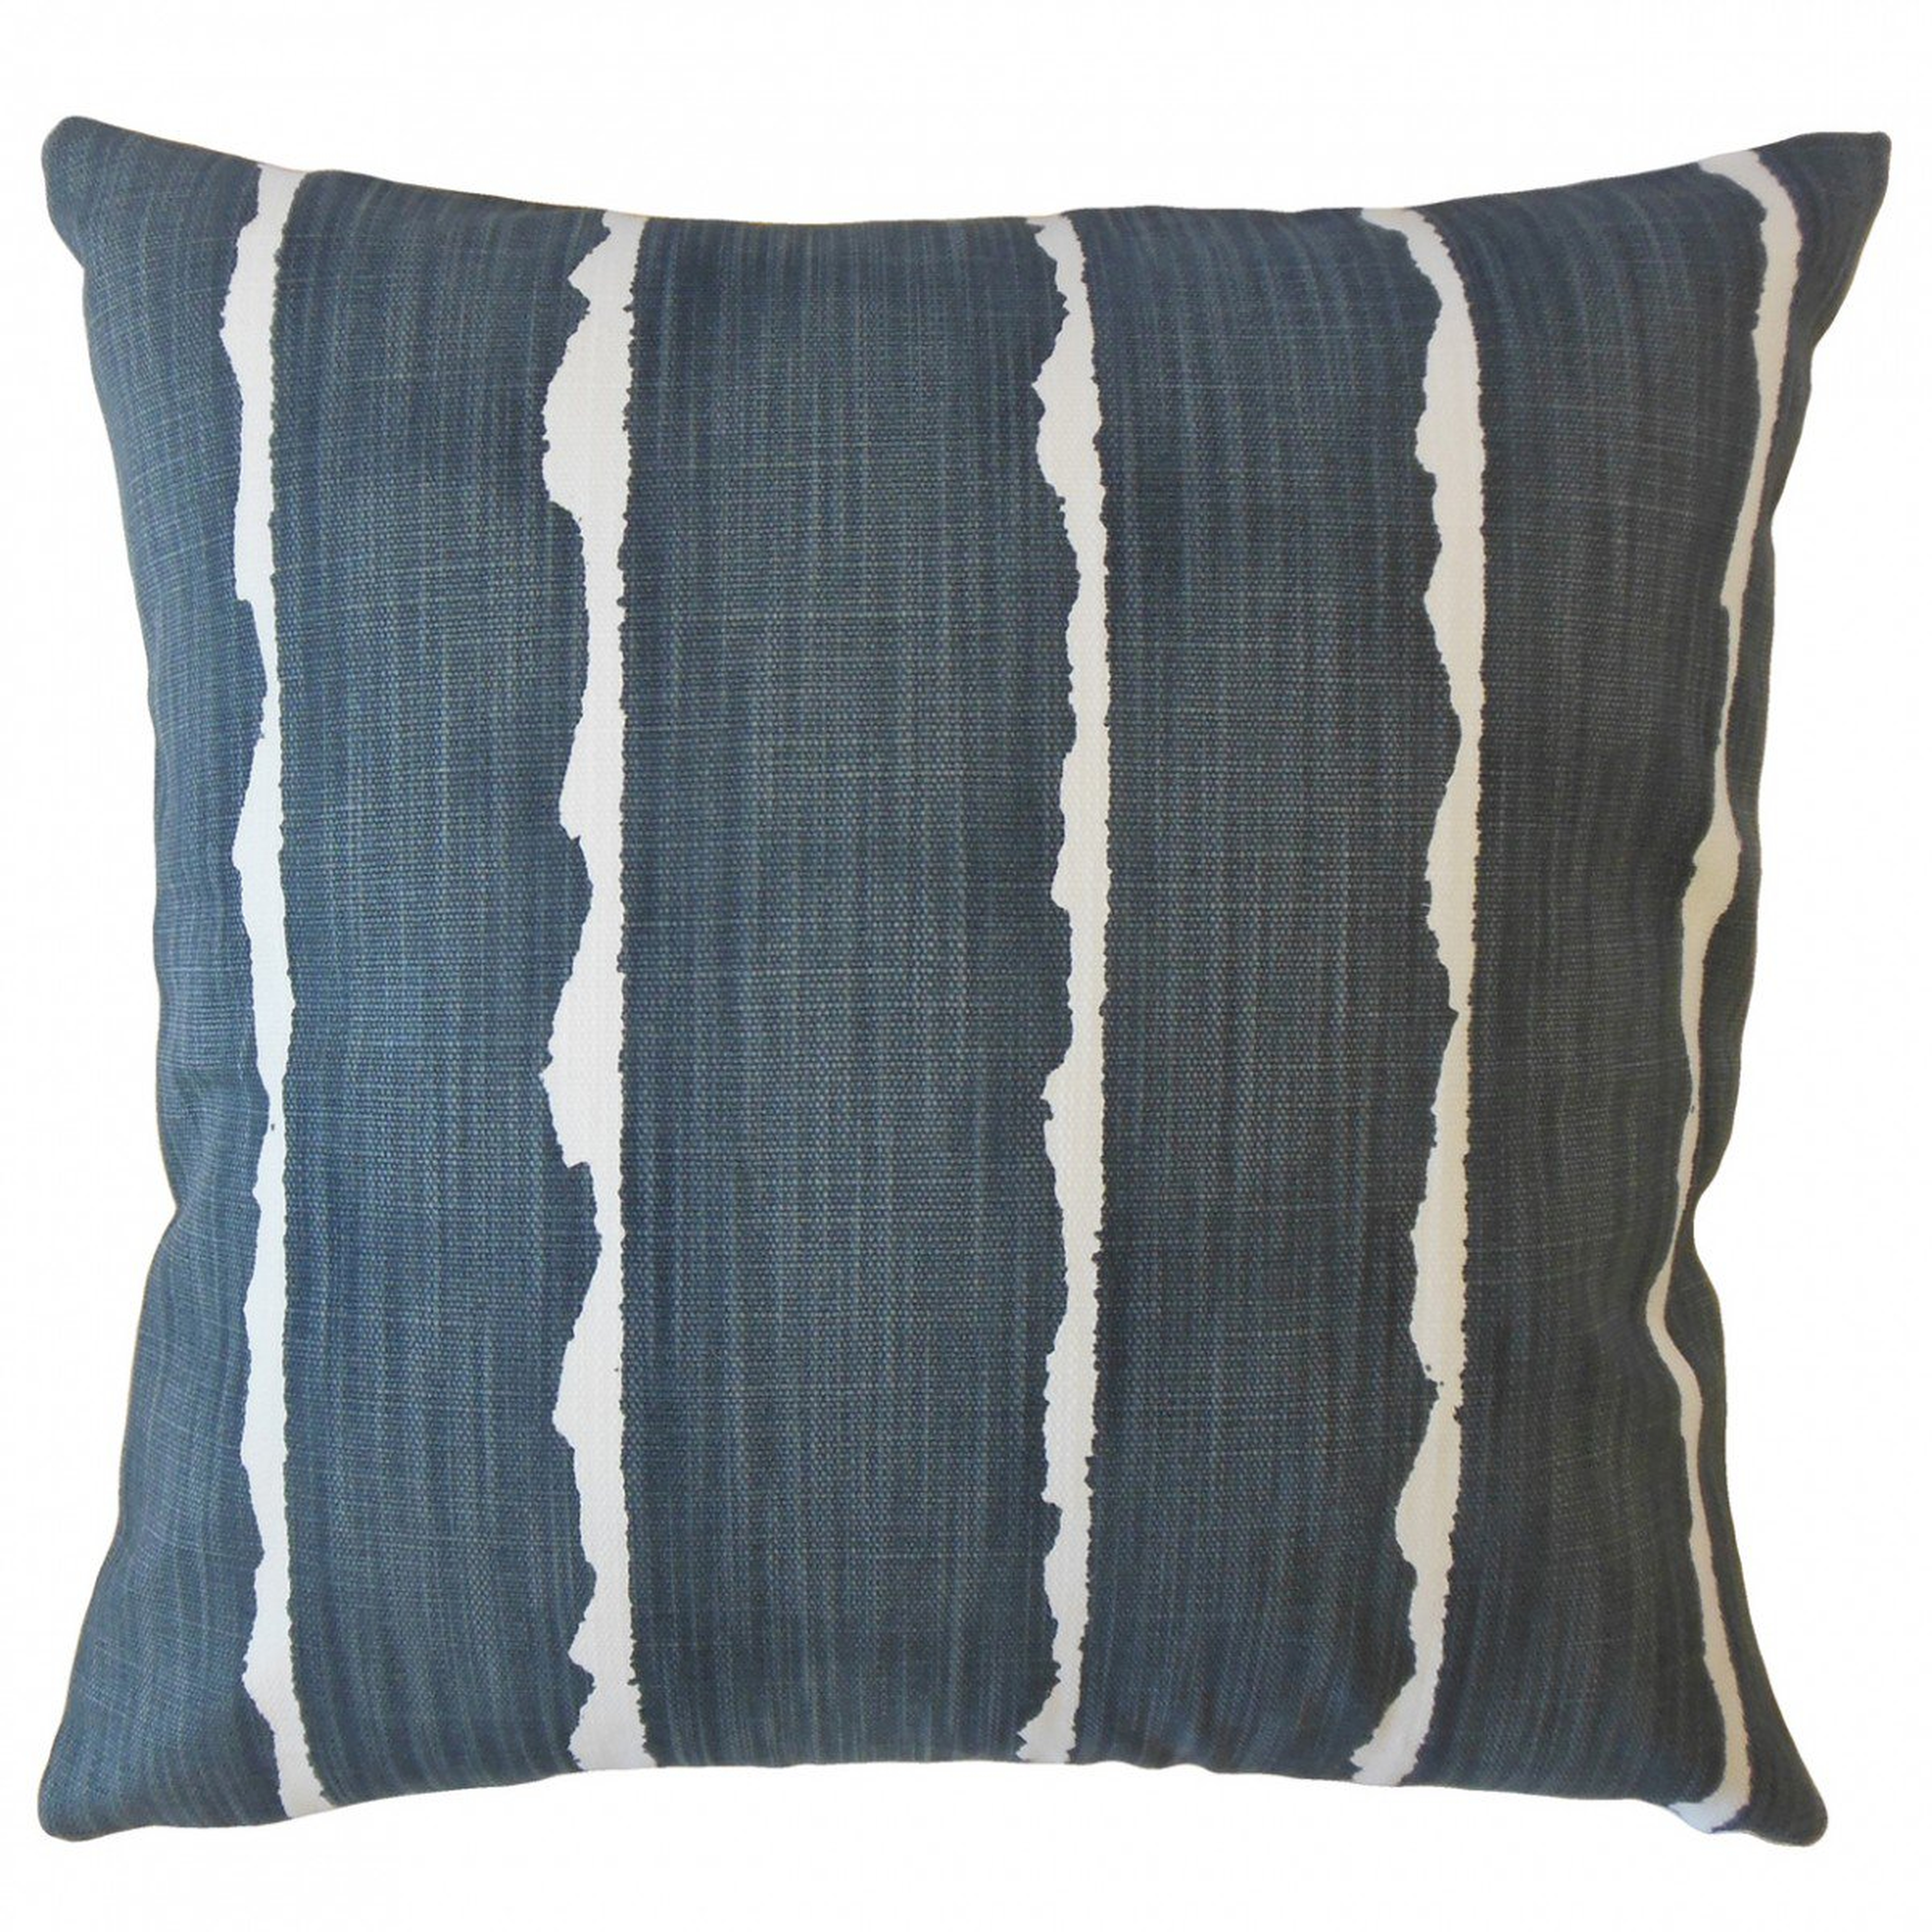 Panya Striped Pillow Carbon 18x18" w down insert - Linen & Seam